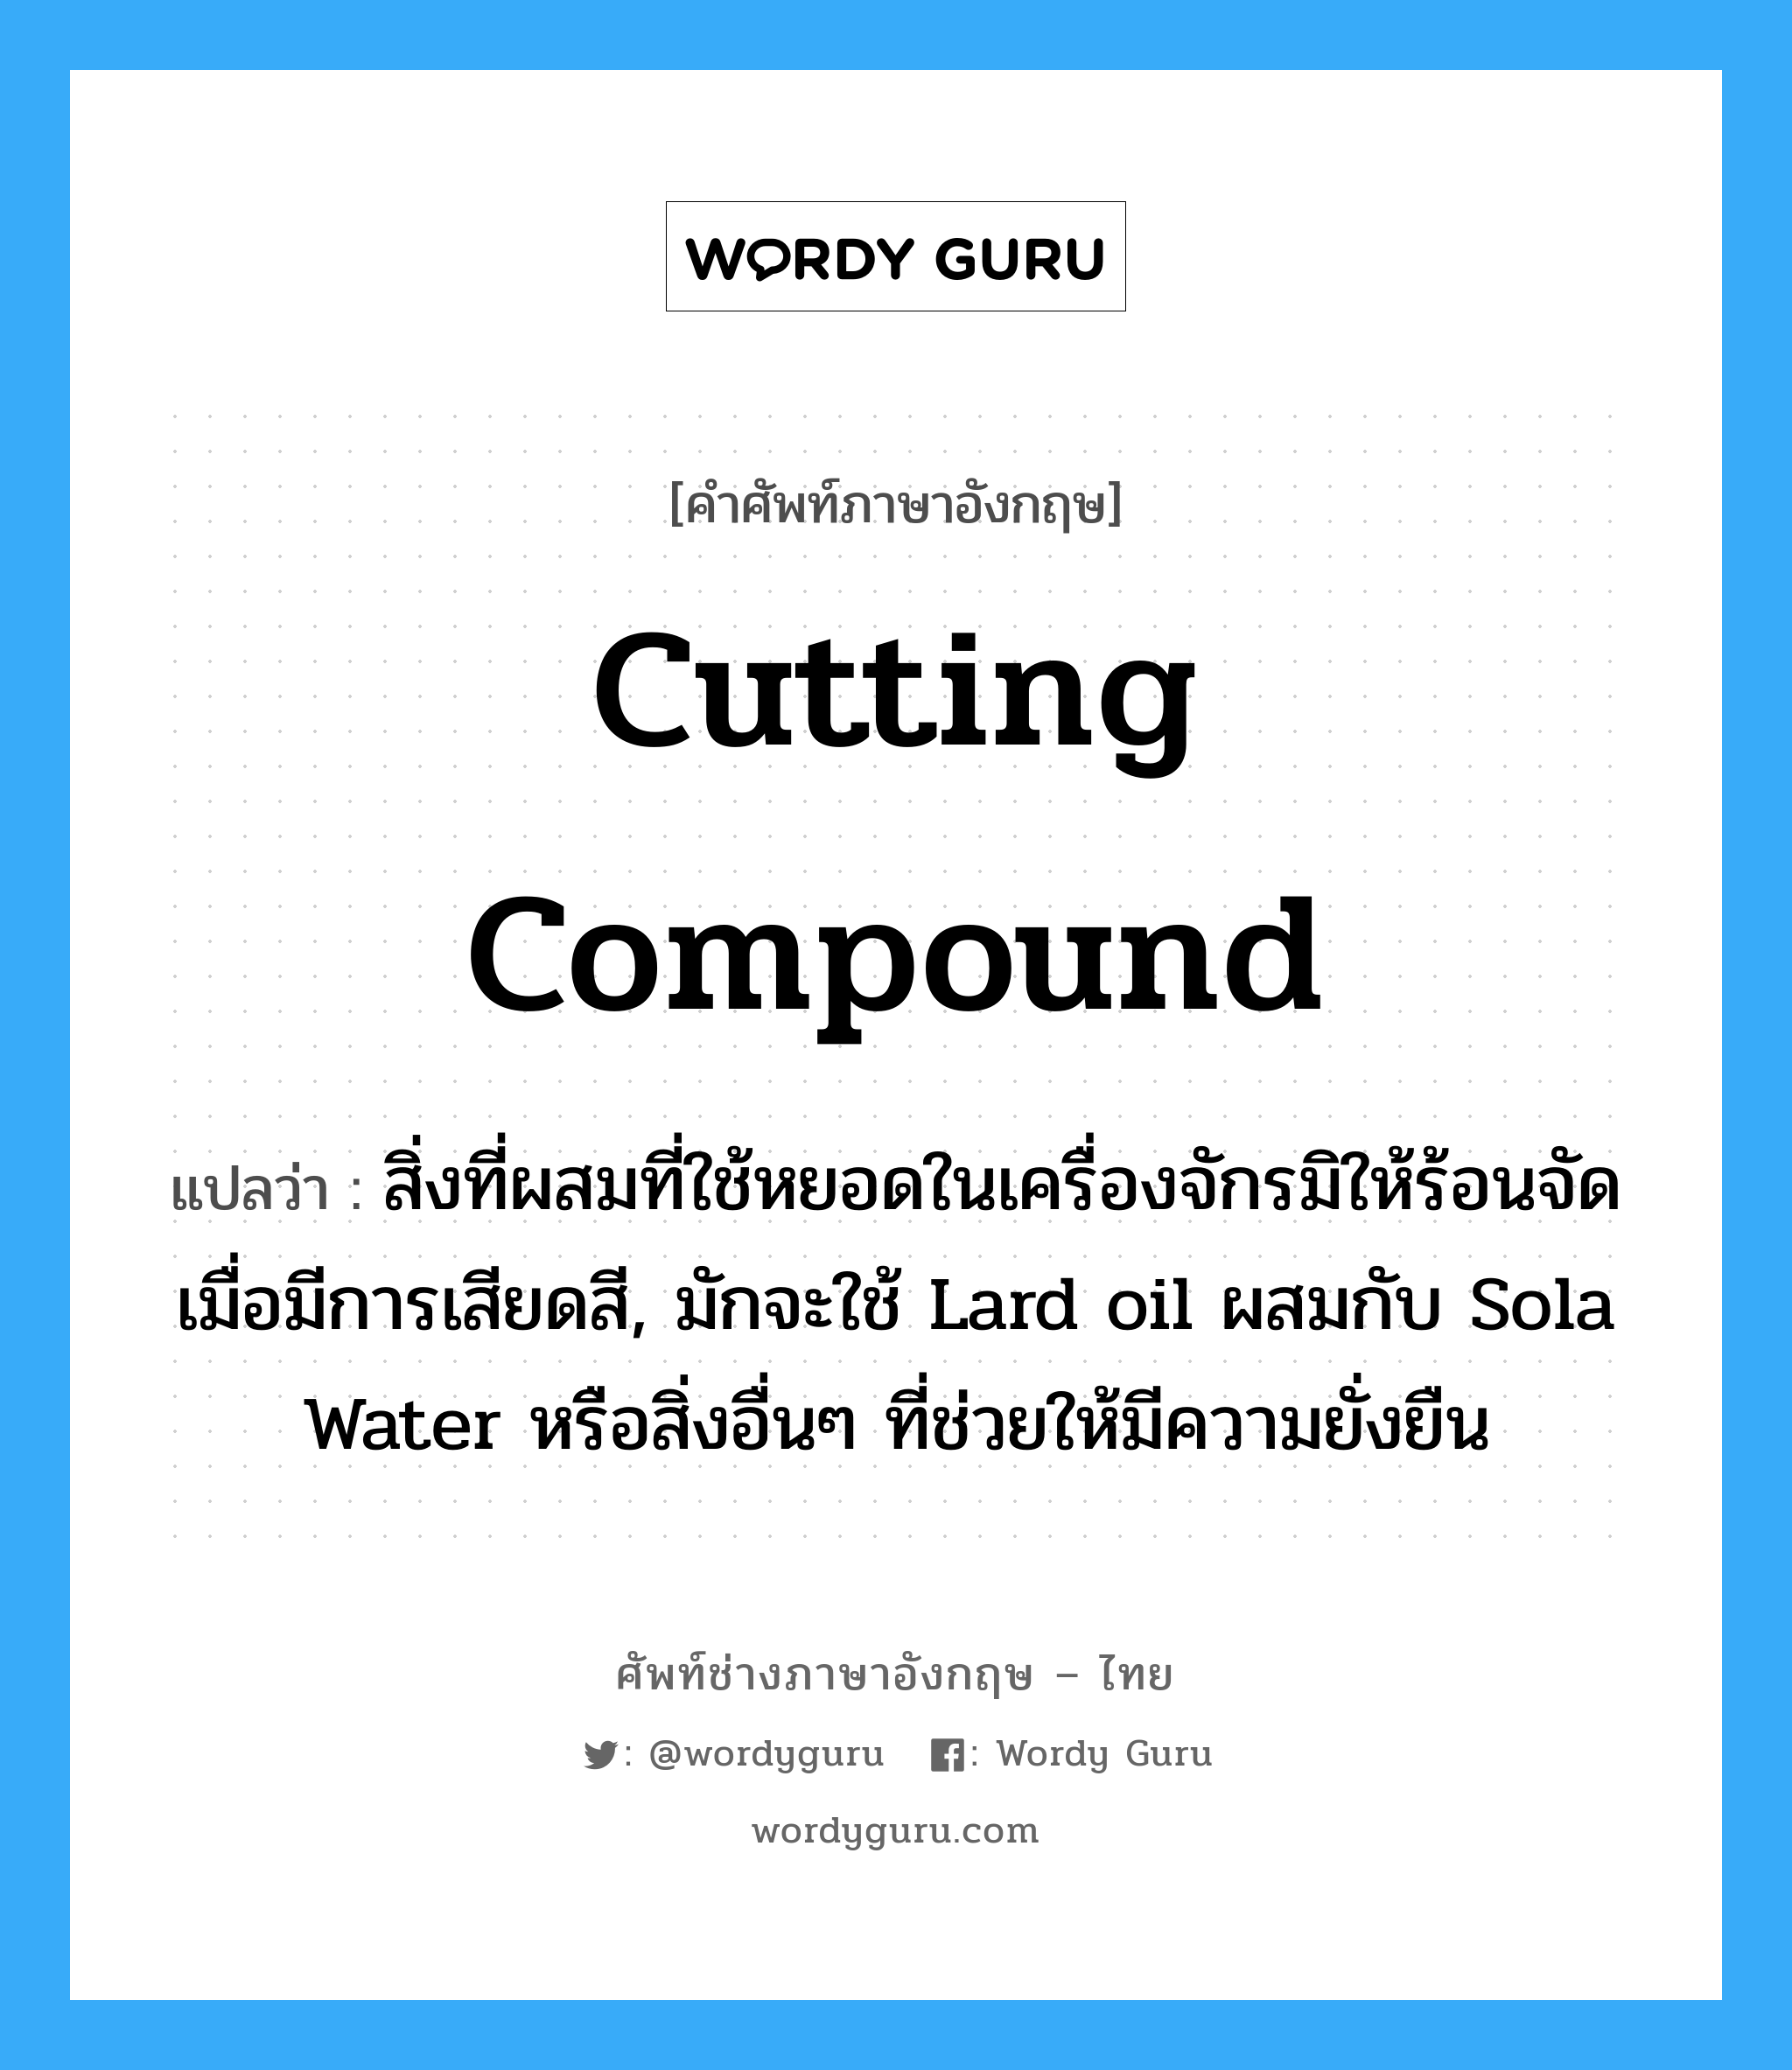 cutting compound แปลว่า?, คำศัพท์ช่างภาษาอังกฤษ - ไทย cutting compound คำศัพท์ภาษาอังกฤษ cutting compound แปลว่า สิ่งที่ผสมที่ใช้หยอดในเครื่องจักรมิให้ร้อนจัดเมื่อมีการเสียดสี, มักจะใช้ Lard oil ผสมกับ Sola Water หรือสิ่งอื่นๆ ที่ช่วยให้มีความยั่งยืน